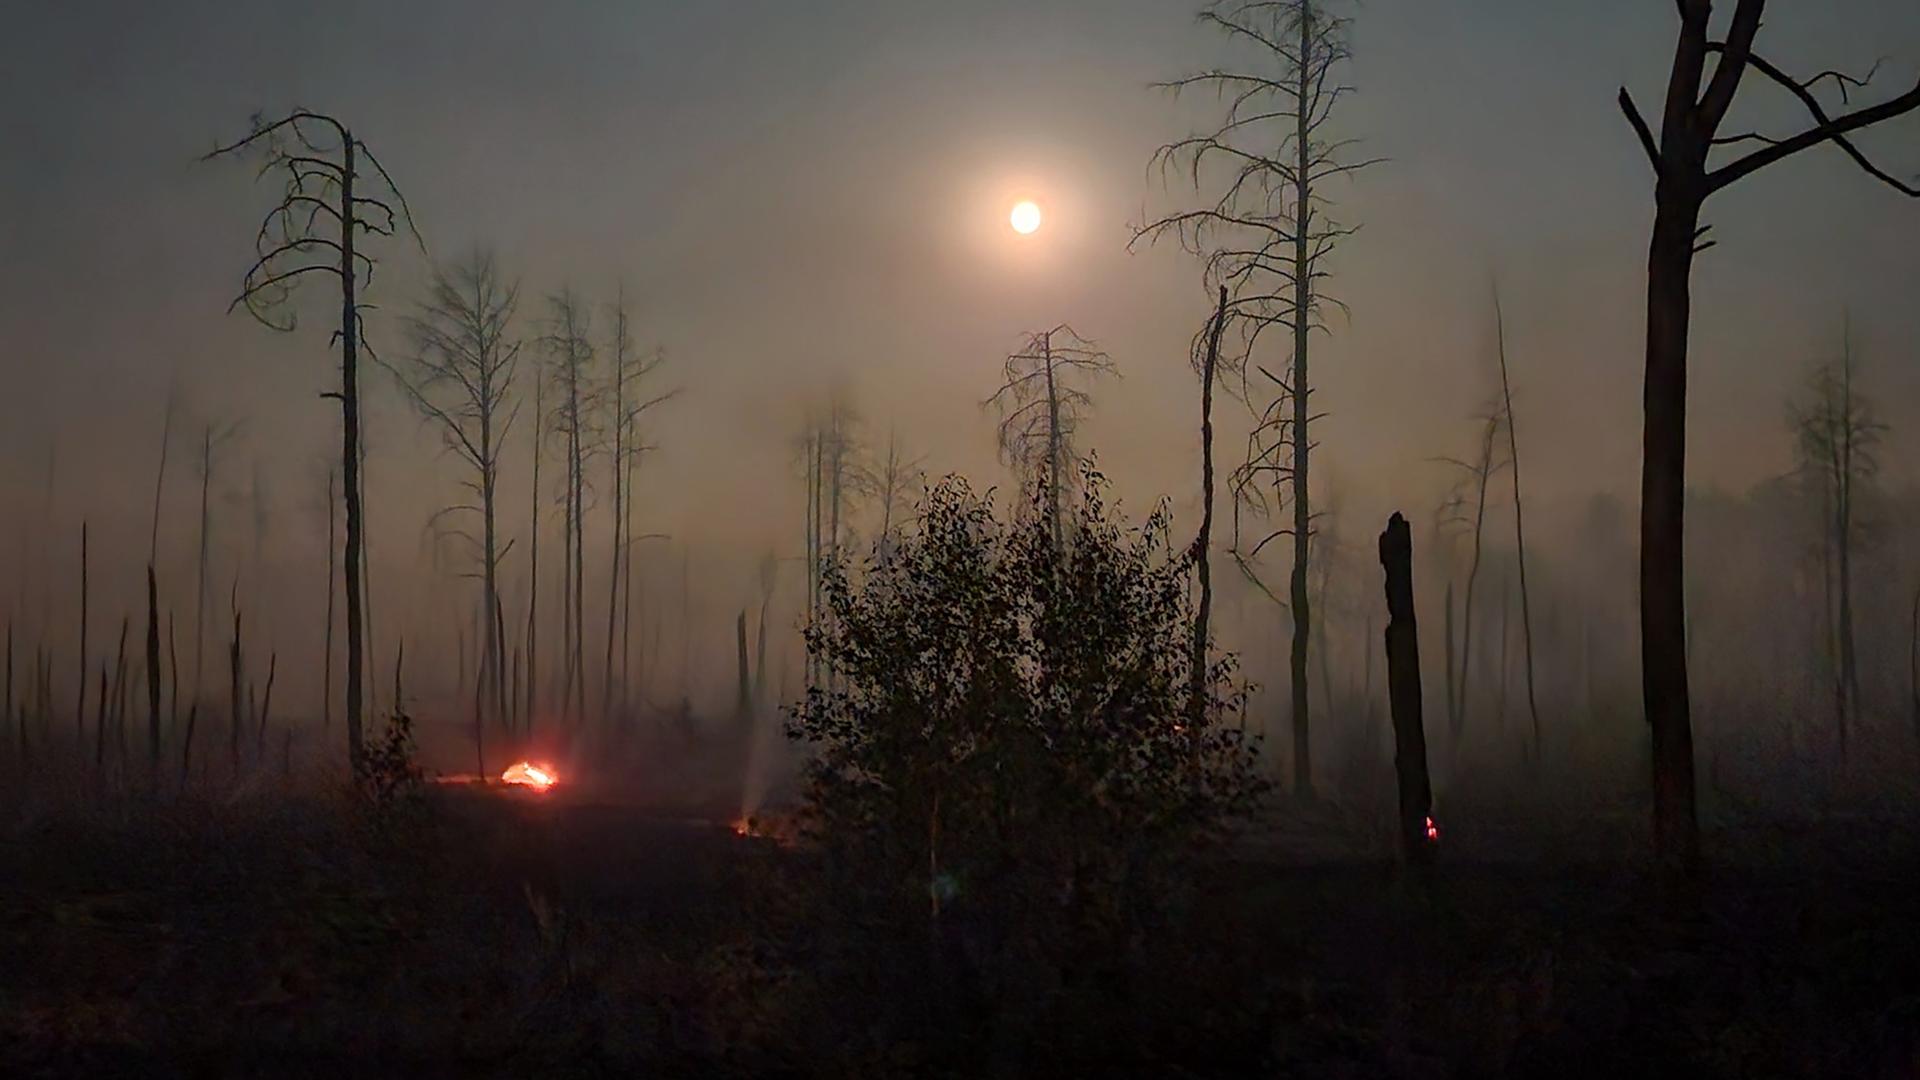 Waldbrand auf einem ehemaligen Truppenübungsplatz bei Jüterbog. Man sieht verkohlte Baumstümpfe und Brandnester auf dem Boden.